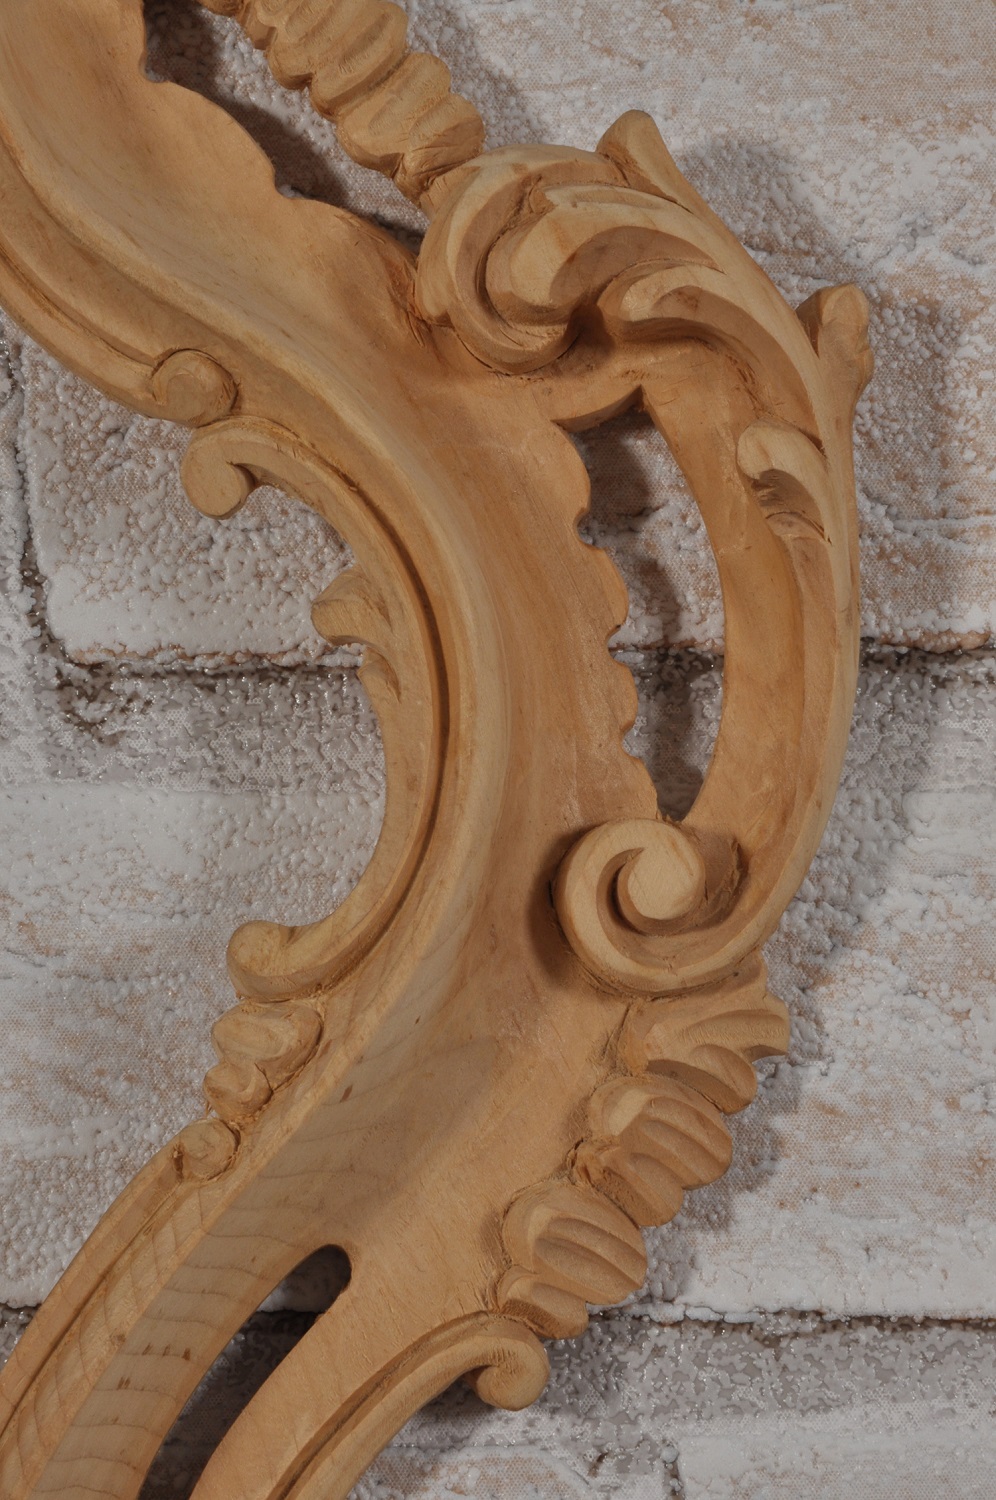 ventola specchiera veneziana originale del 1700 con intagli di alto valore made in Italy stile classico barocco Luigi XV prodotta nel laboratorio di alta ebanisteria italiano